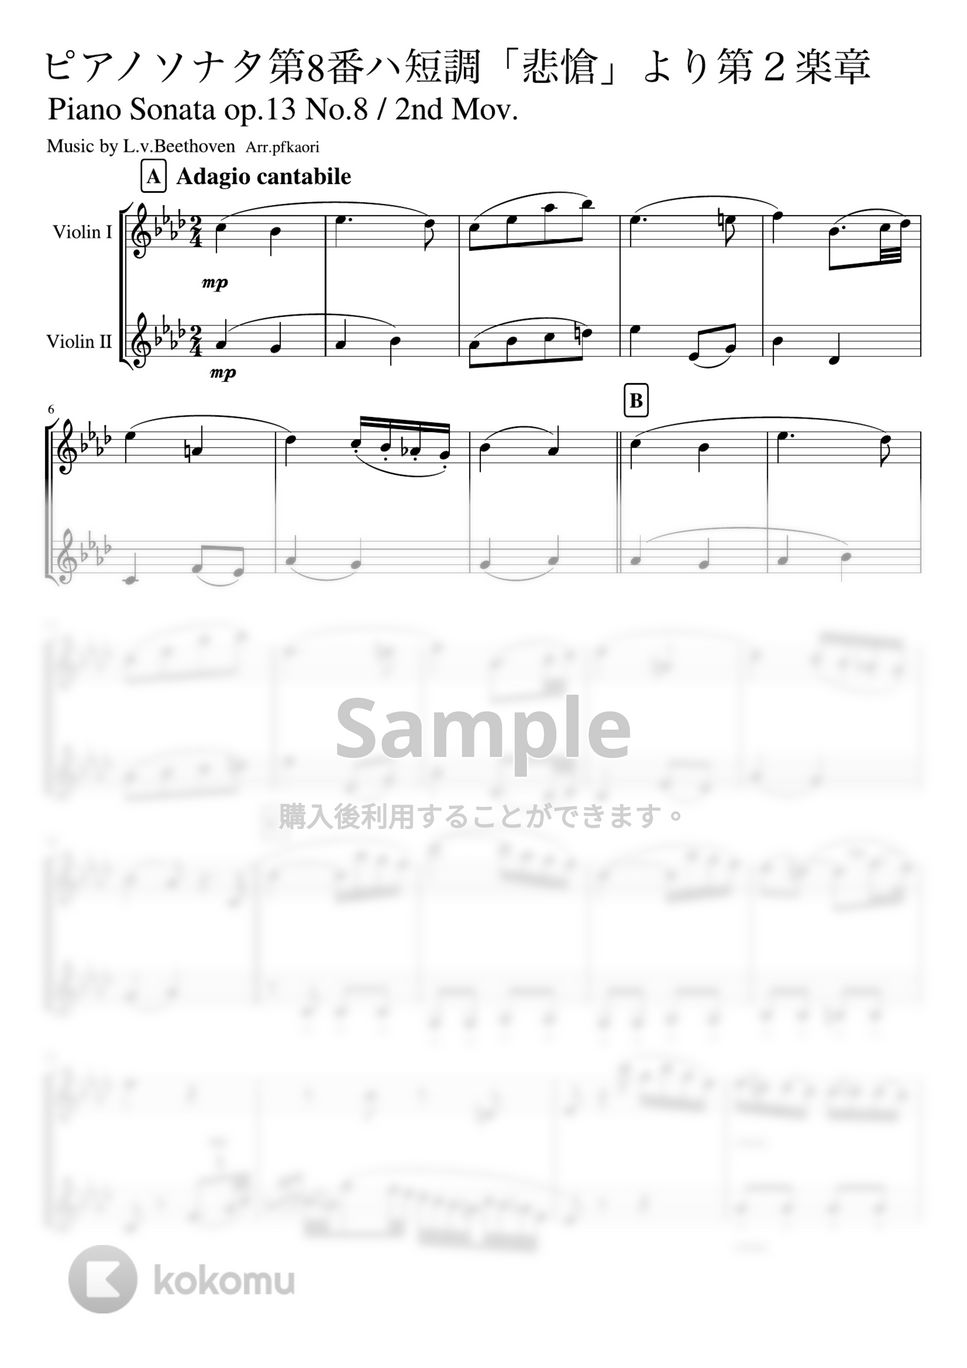 ベートーヴェン - ピアノソナタ第8番第2楽章「悲愴」 (バイオリン二重奏 ・無伴奏/スコア) by pfkaori